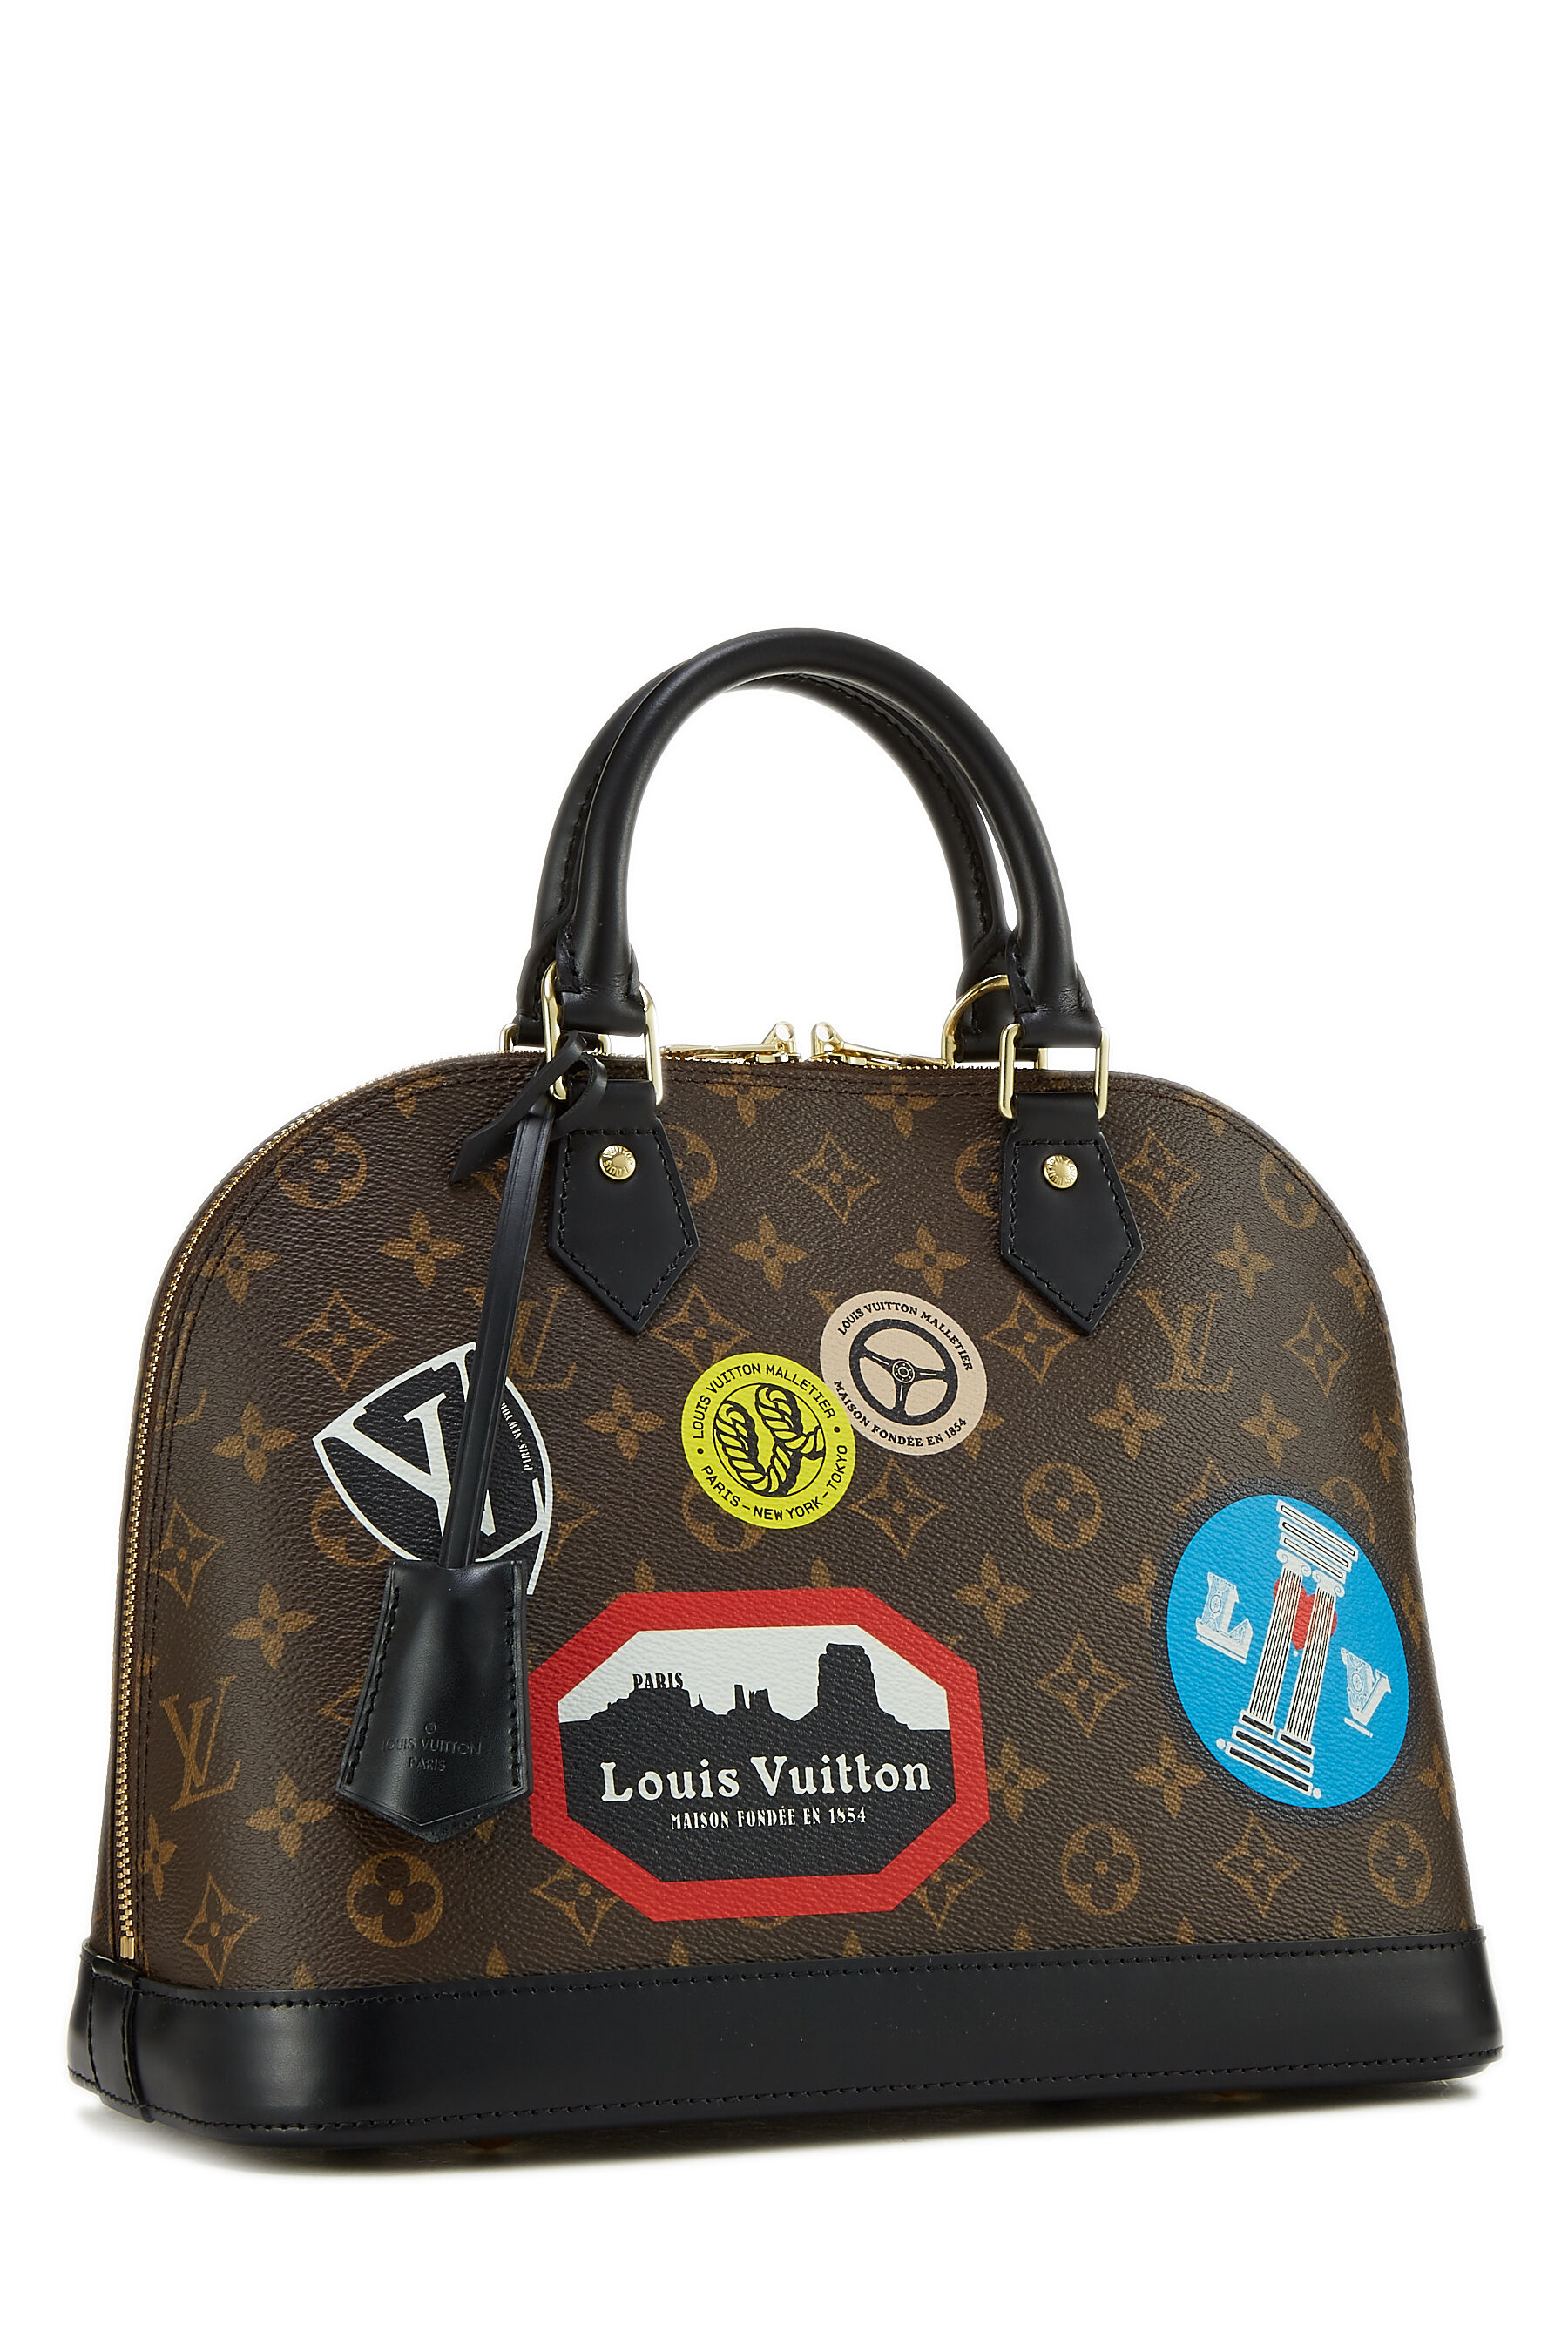 Louis Vuitton Monogram My LV World Tour Alma Bb